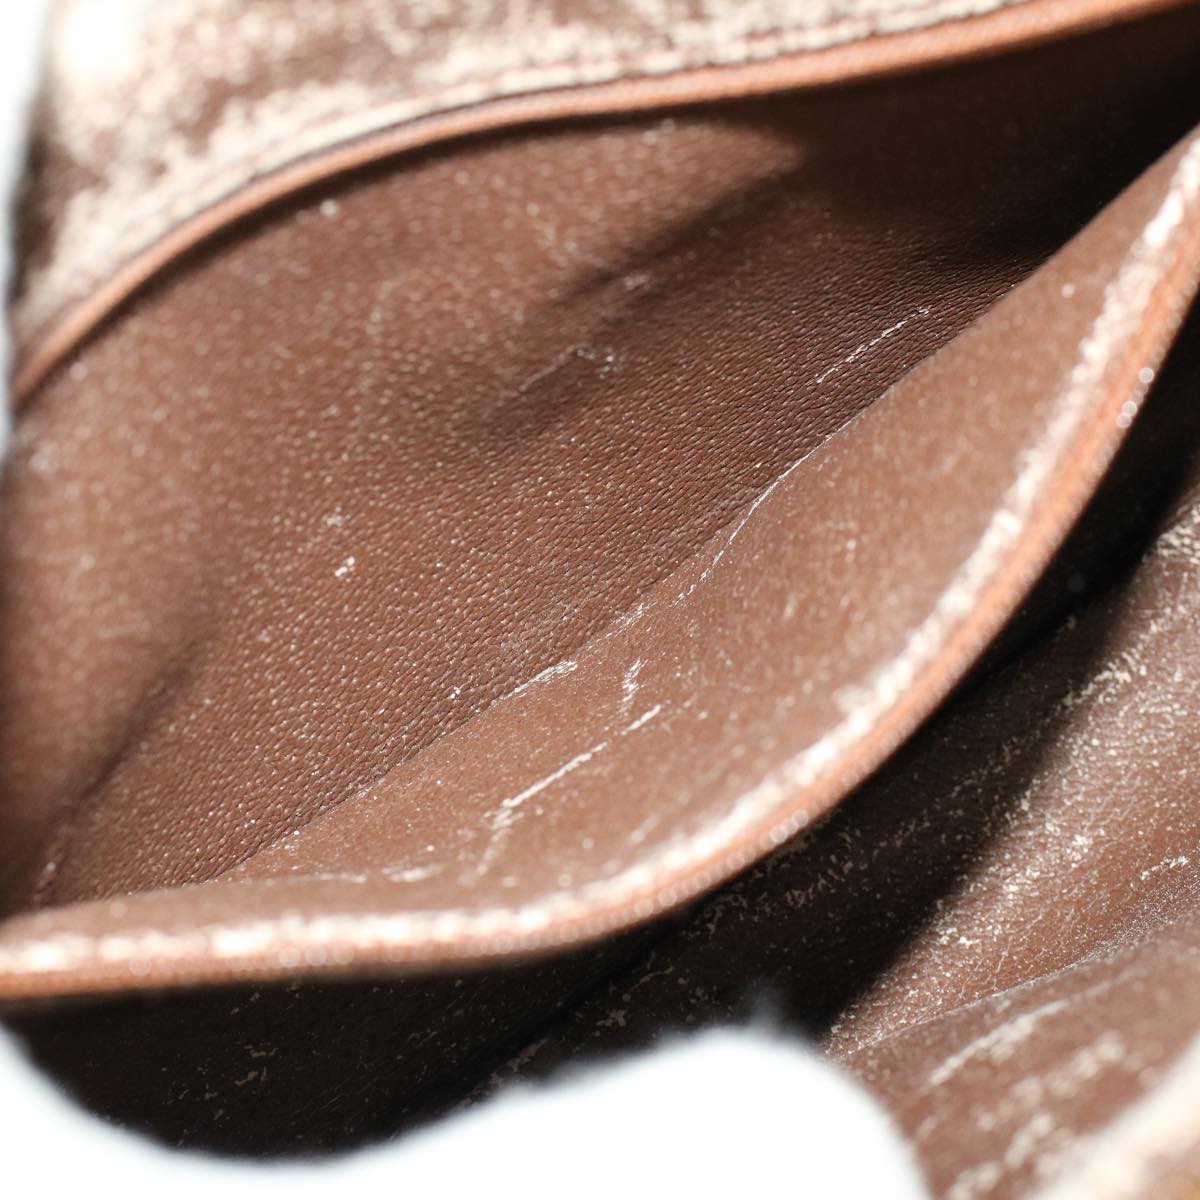 Burberrys Nova Check Shoulder Bag PVC Leather Beige Brown Auth 53729